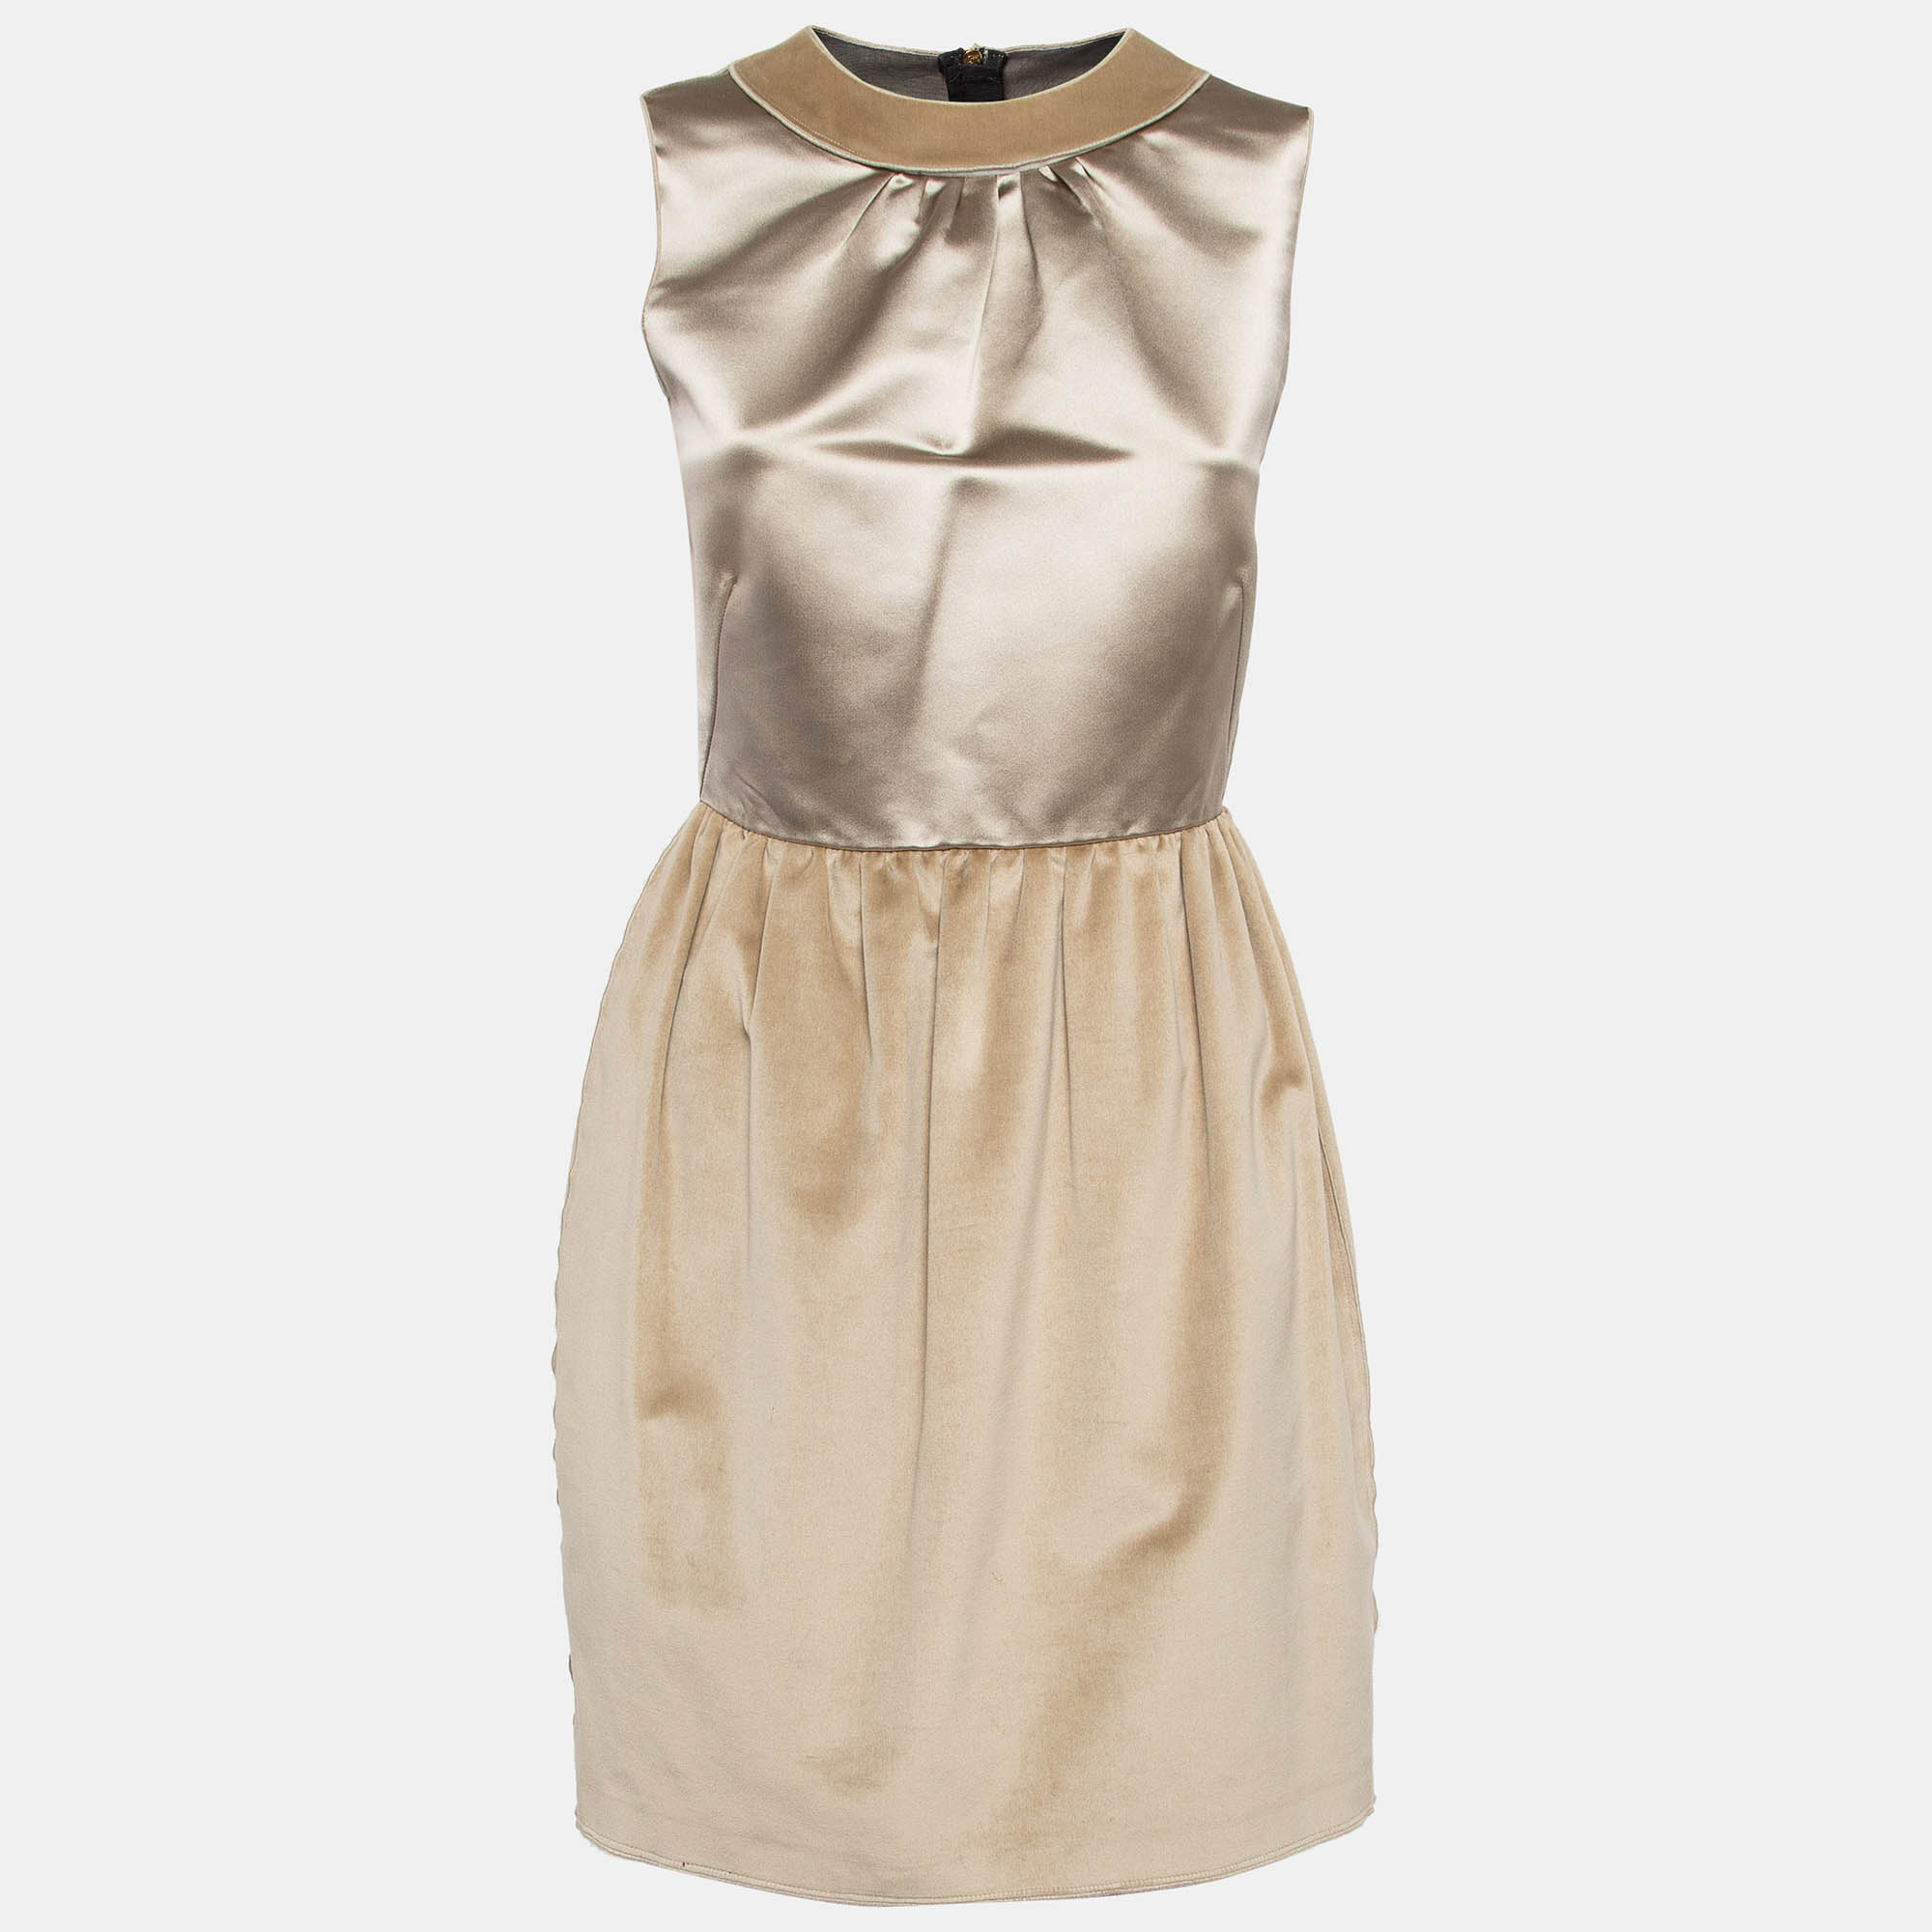 D&g gold satin and velvet sleeveless mini dress m